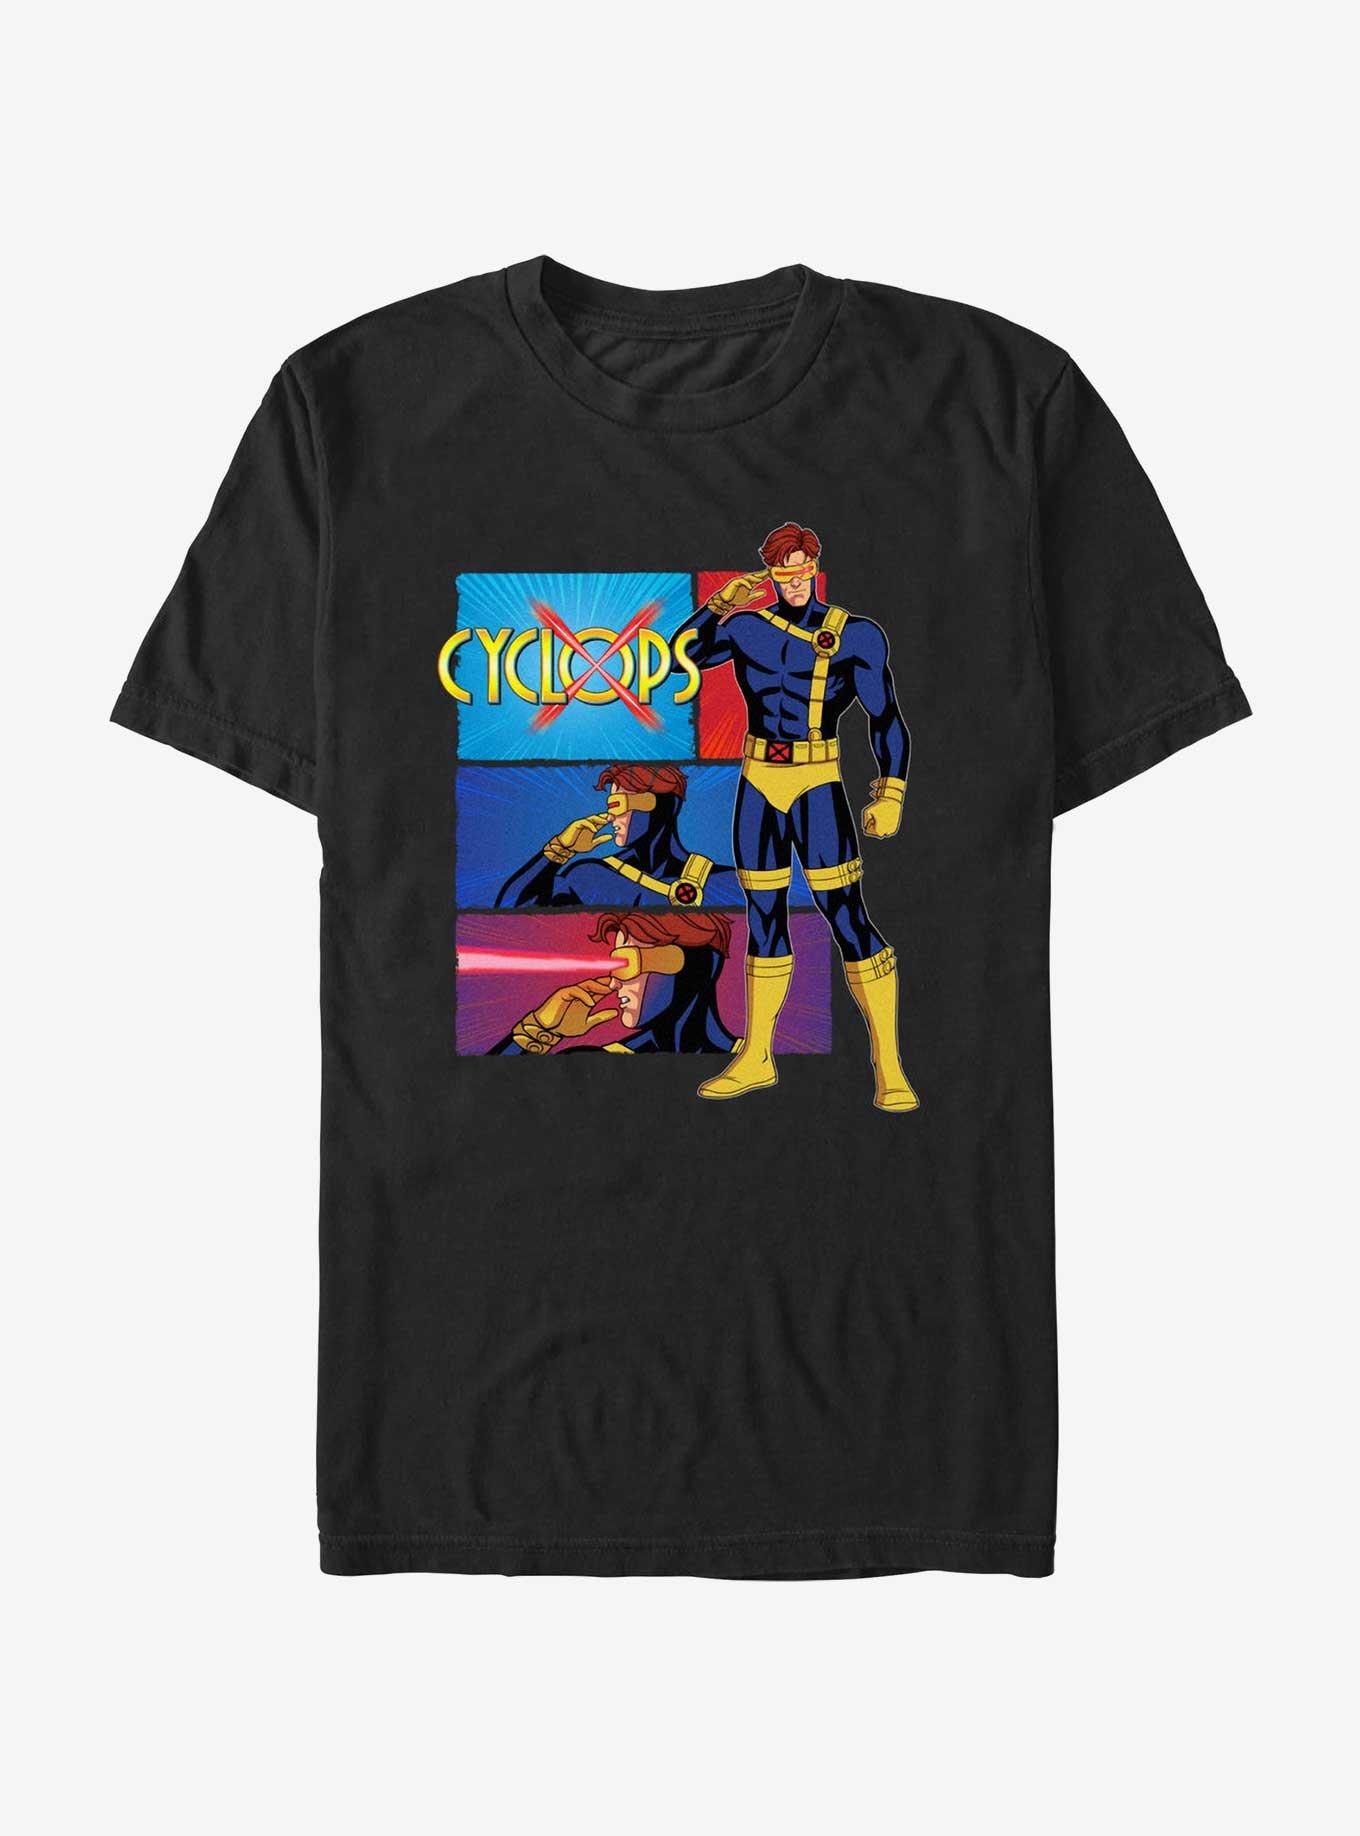 Marvel X-Men '97 Cyclops Poses T-Shirt, BLACK, hi-res